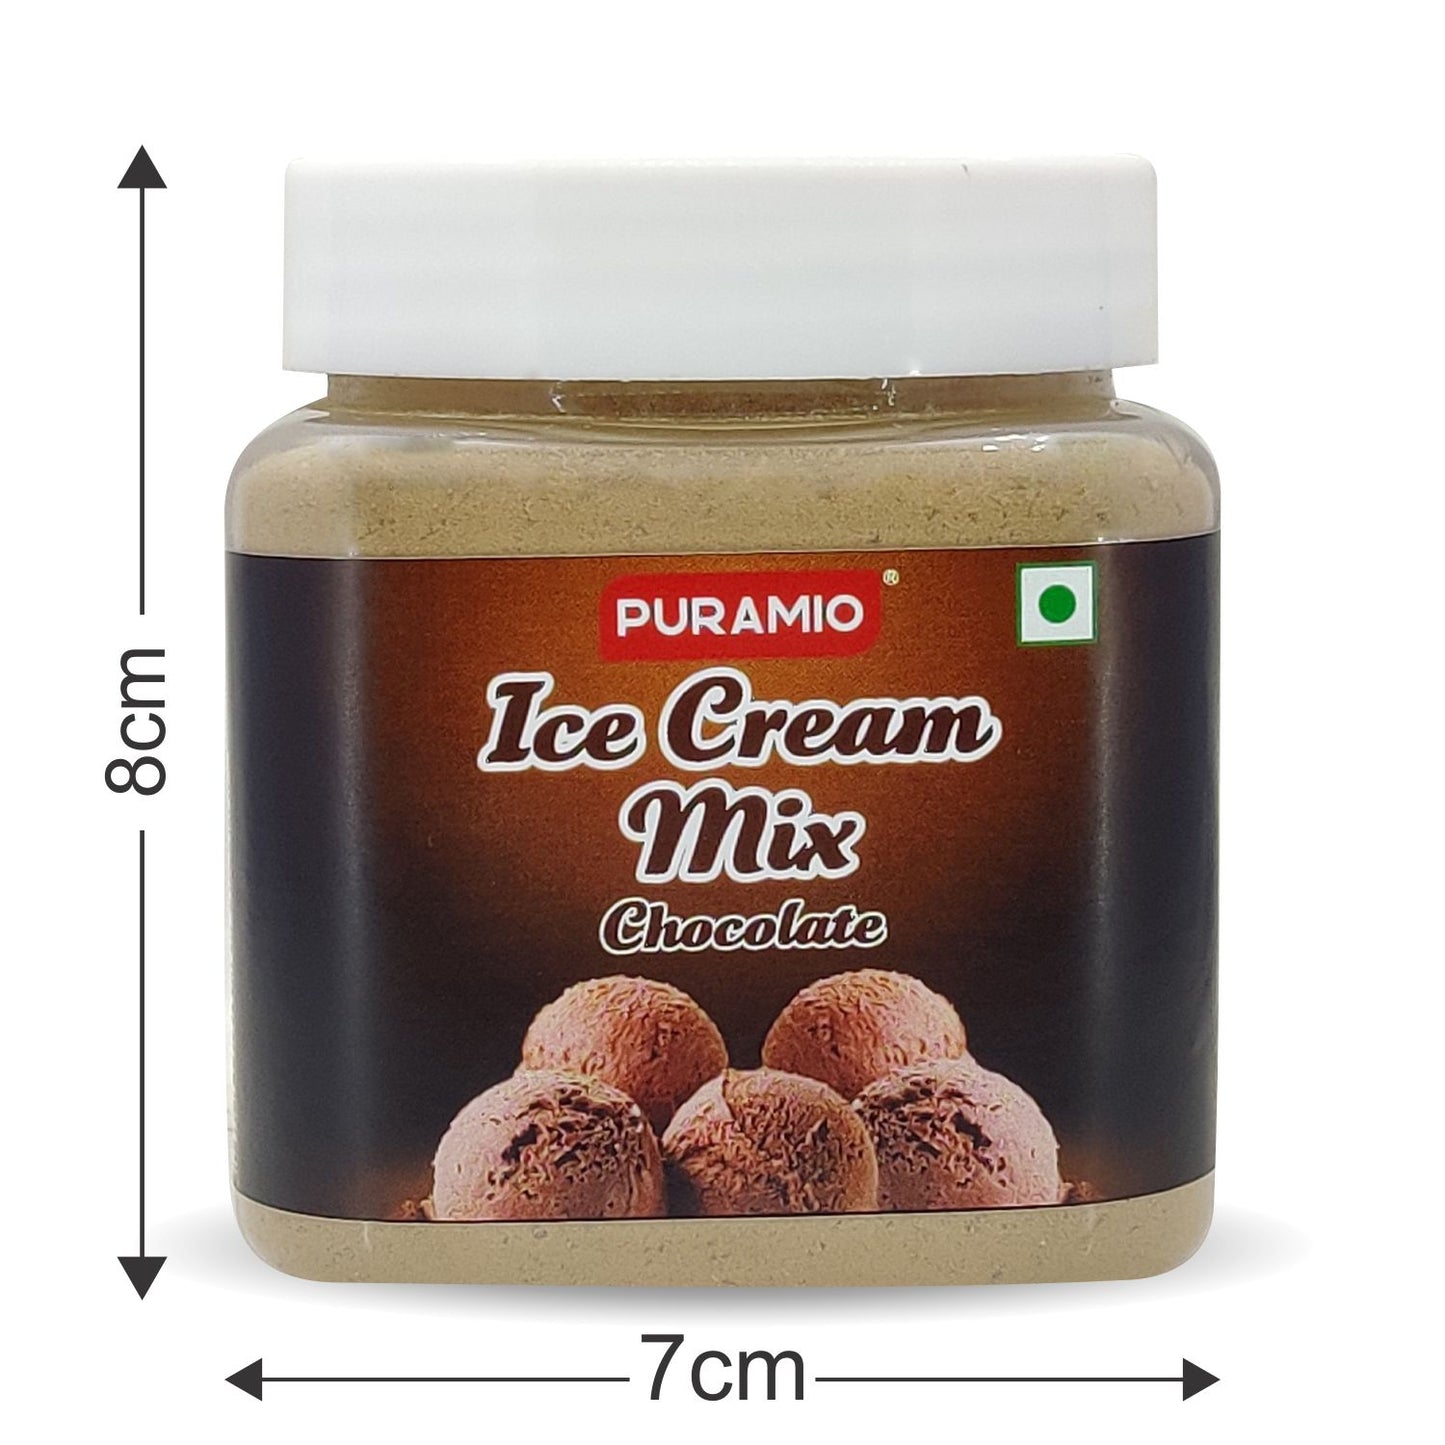 Puramio Ice Cream Mix Chocolate, 250g (Chocolate)